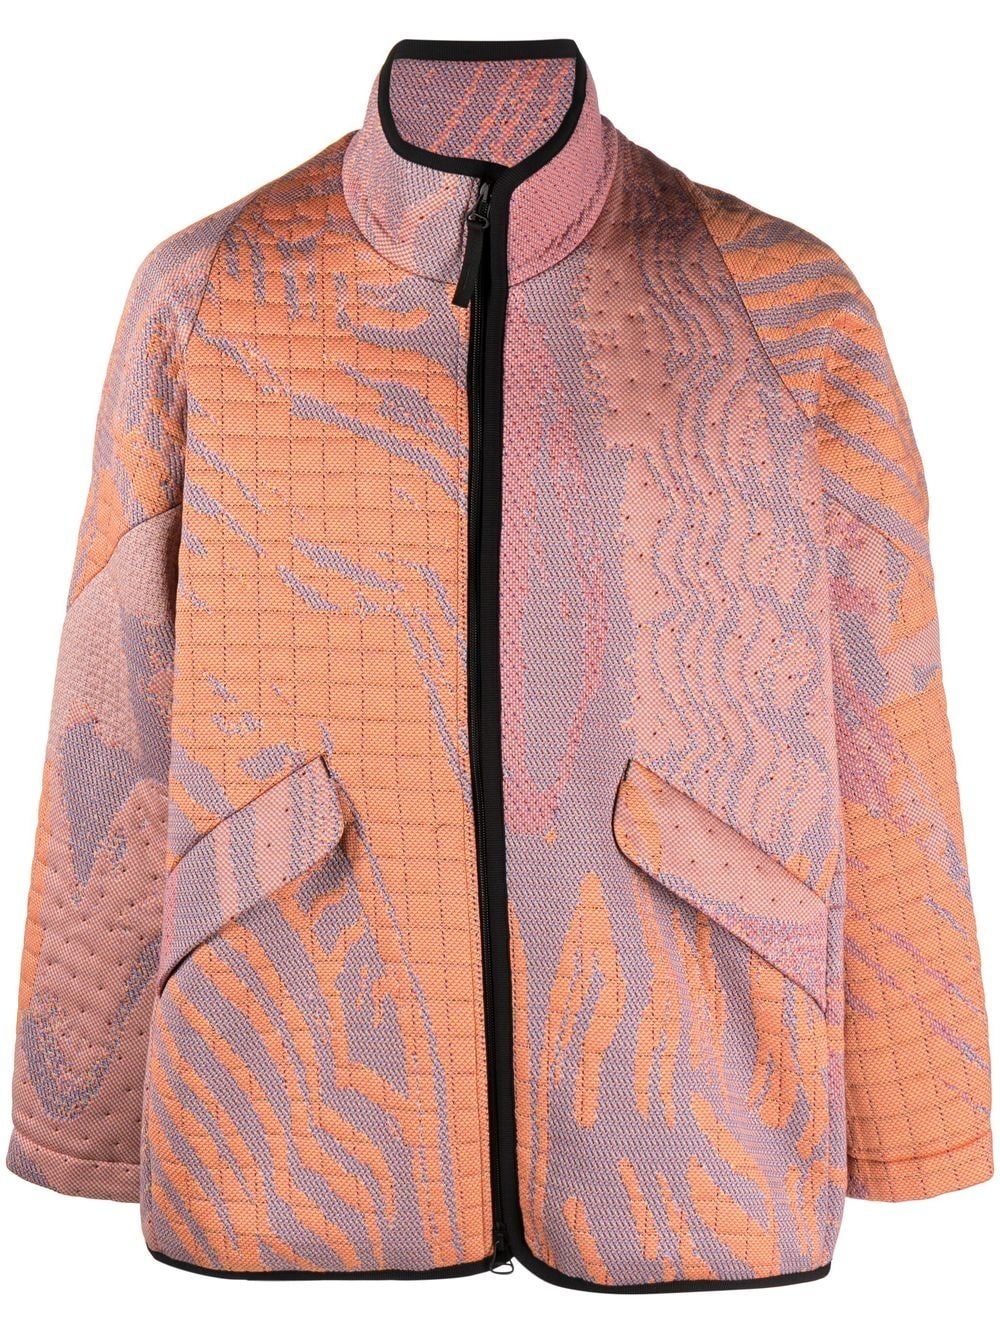 jacquard-pattern zip-up jacket